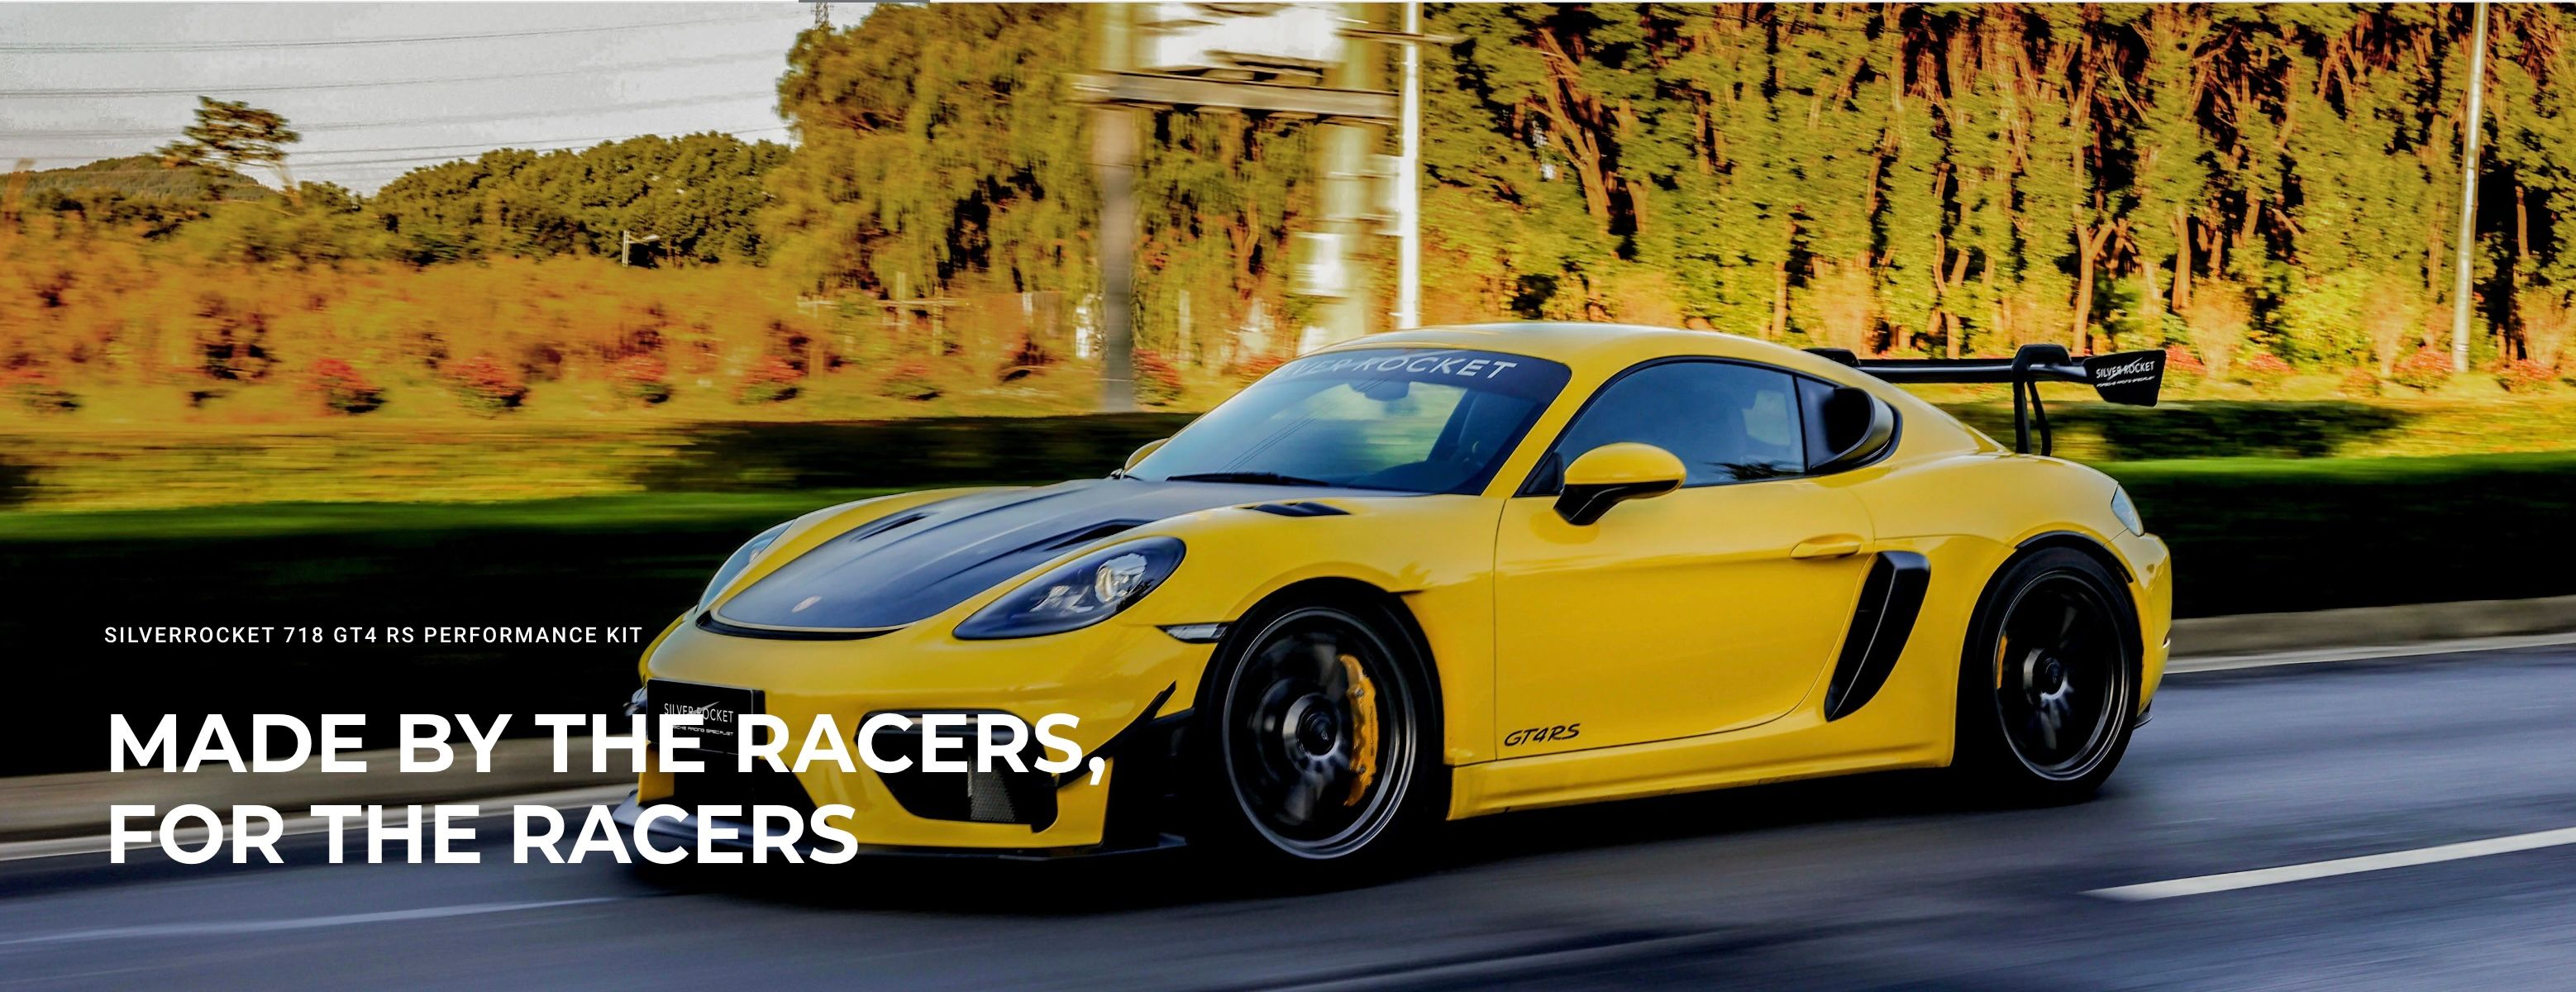 Maximice el rendimiento: actualizaciones esenciales de SilverRocket para el Porsche 718 GT4 RS